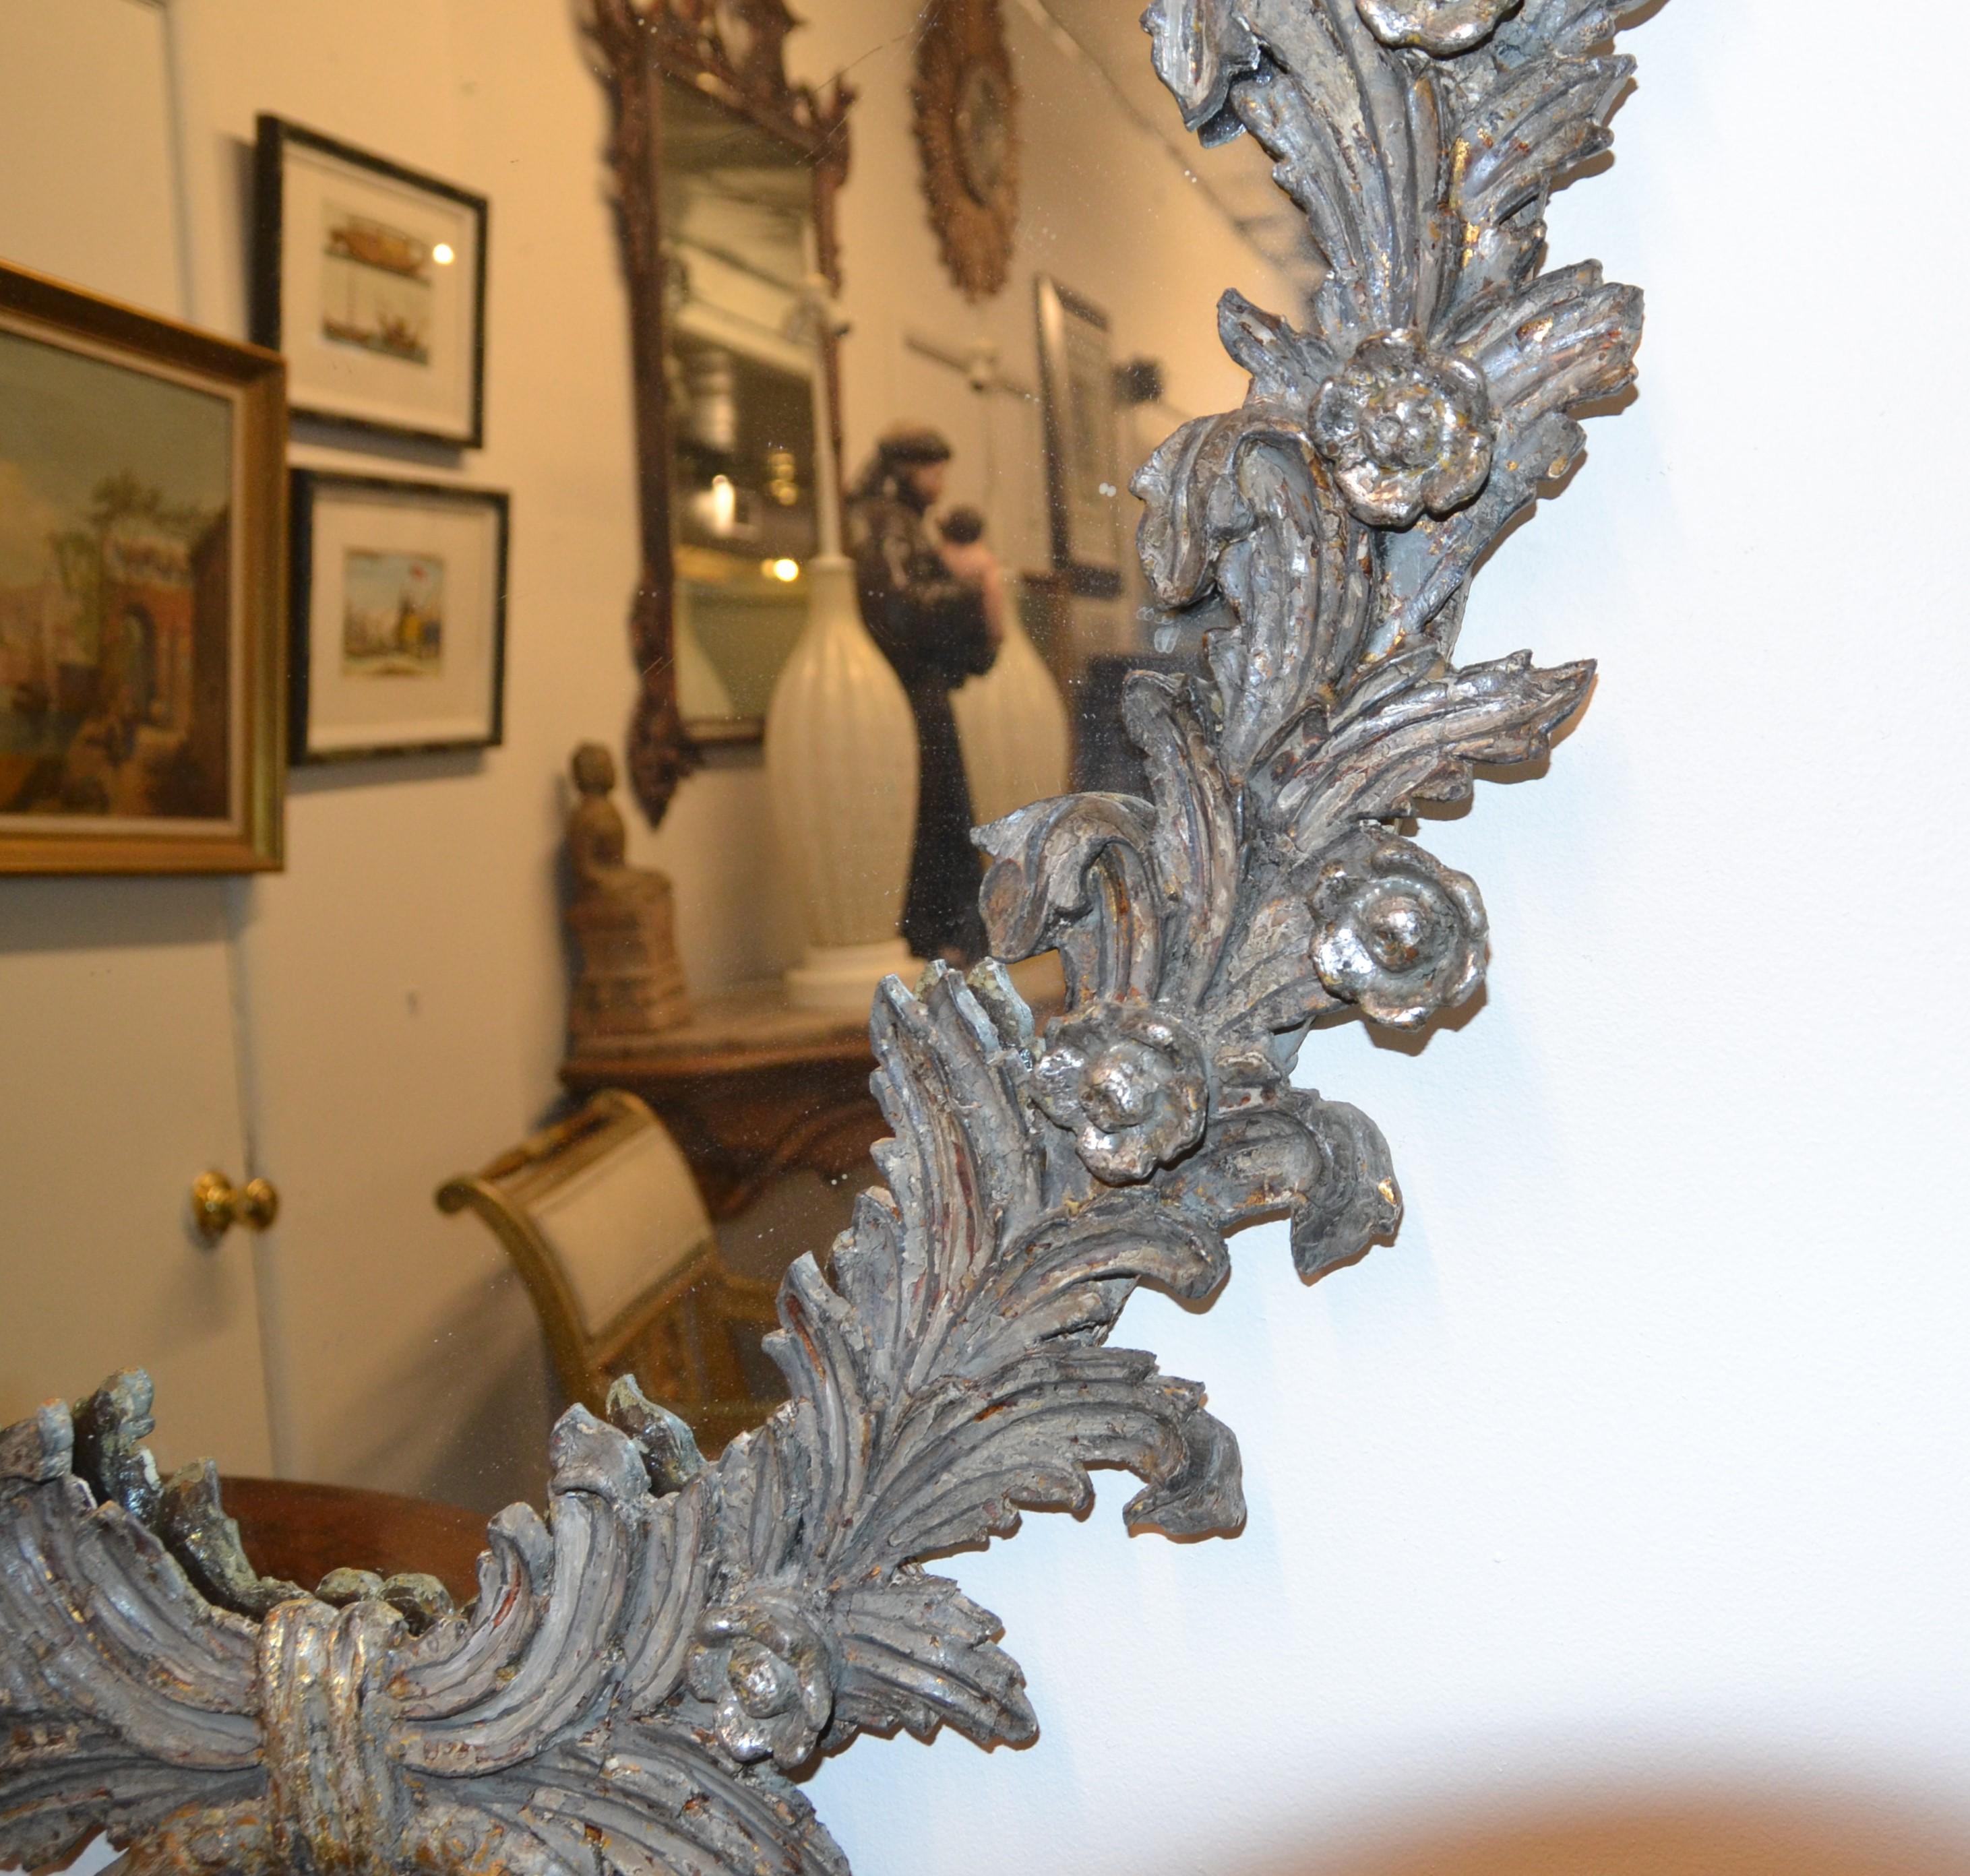 French Silver Leaf Mirror